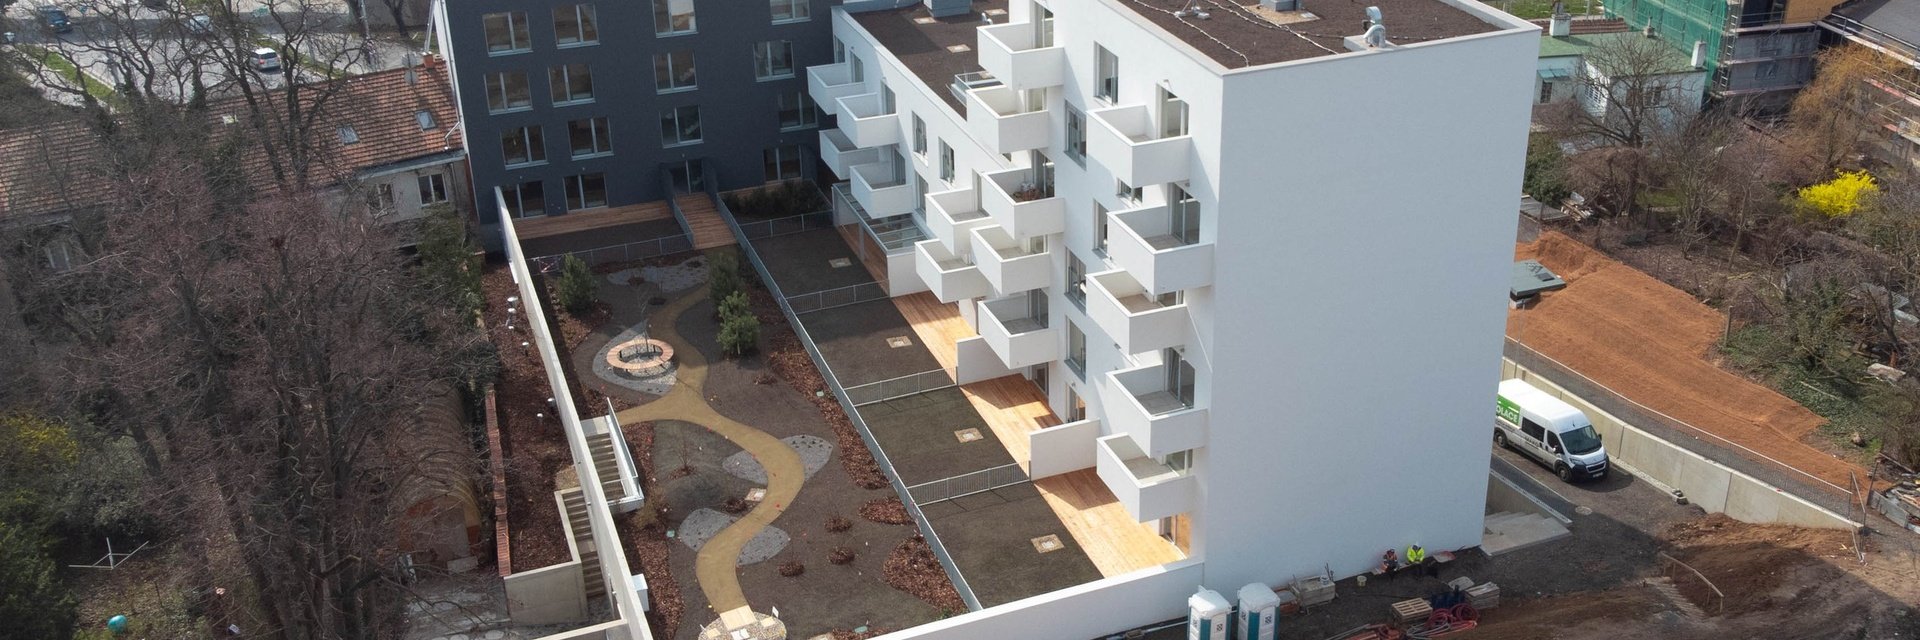 Nové Hlinky - prémiové bydlení v sousedství Masarykovy čtvrti